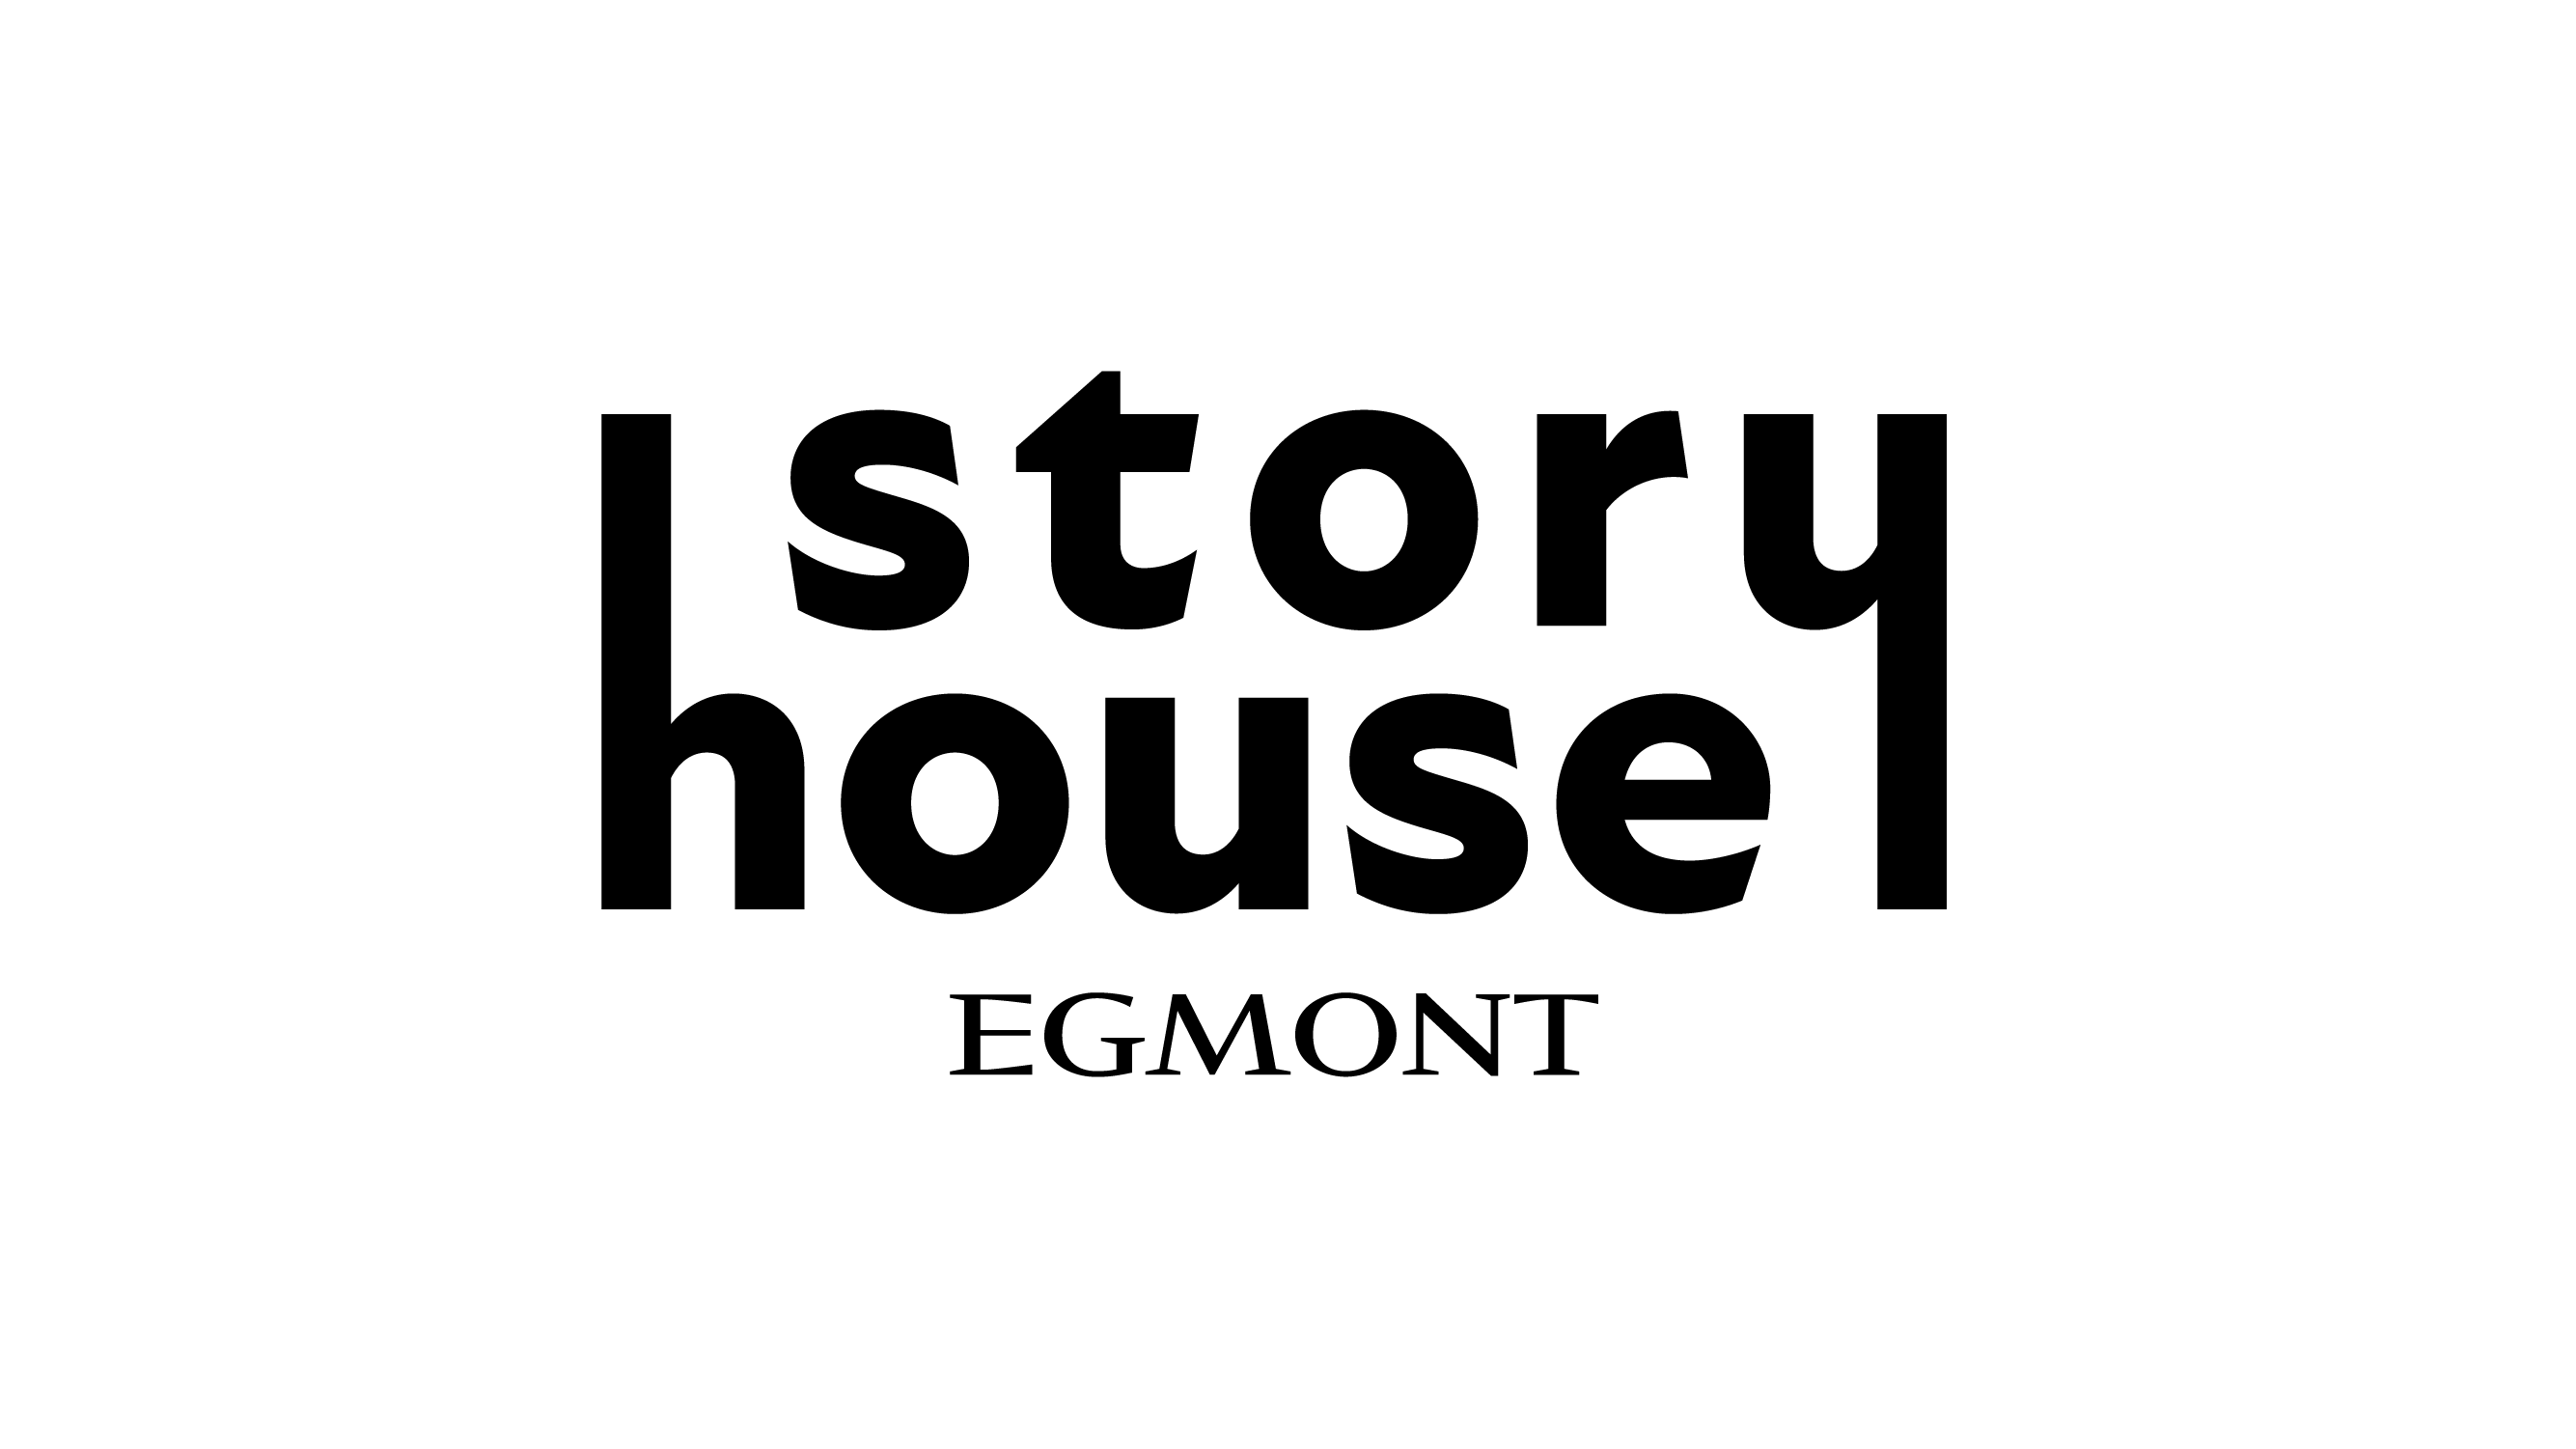 Story house egmont logo